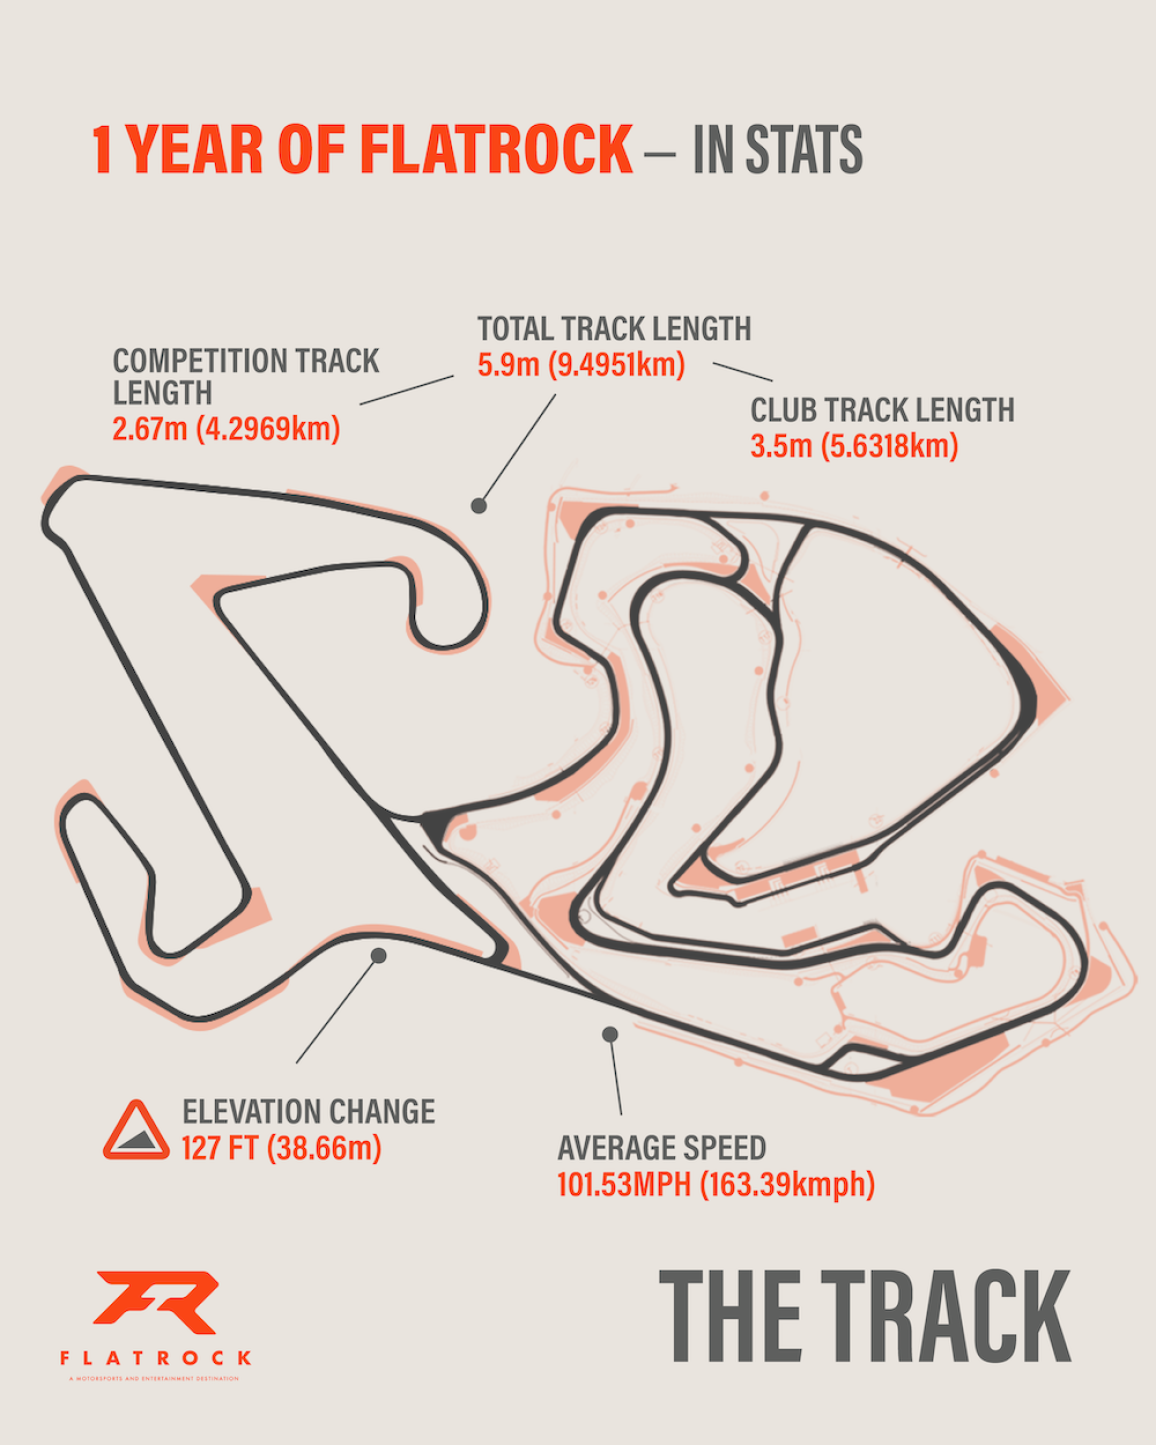 Flatrock Motorsports Park – Νέα πίστα με 34 στροφές και σχεδόν 9,5 χιλιόμετρα διαδρομής!